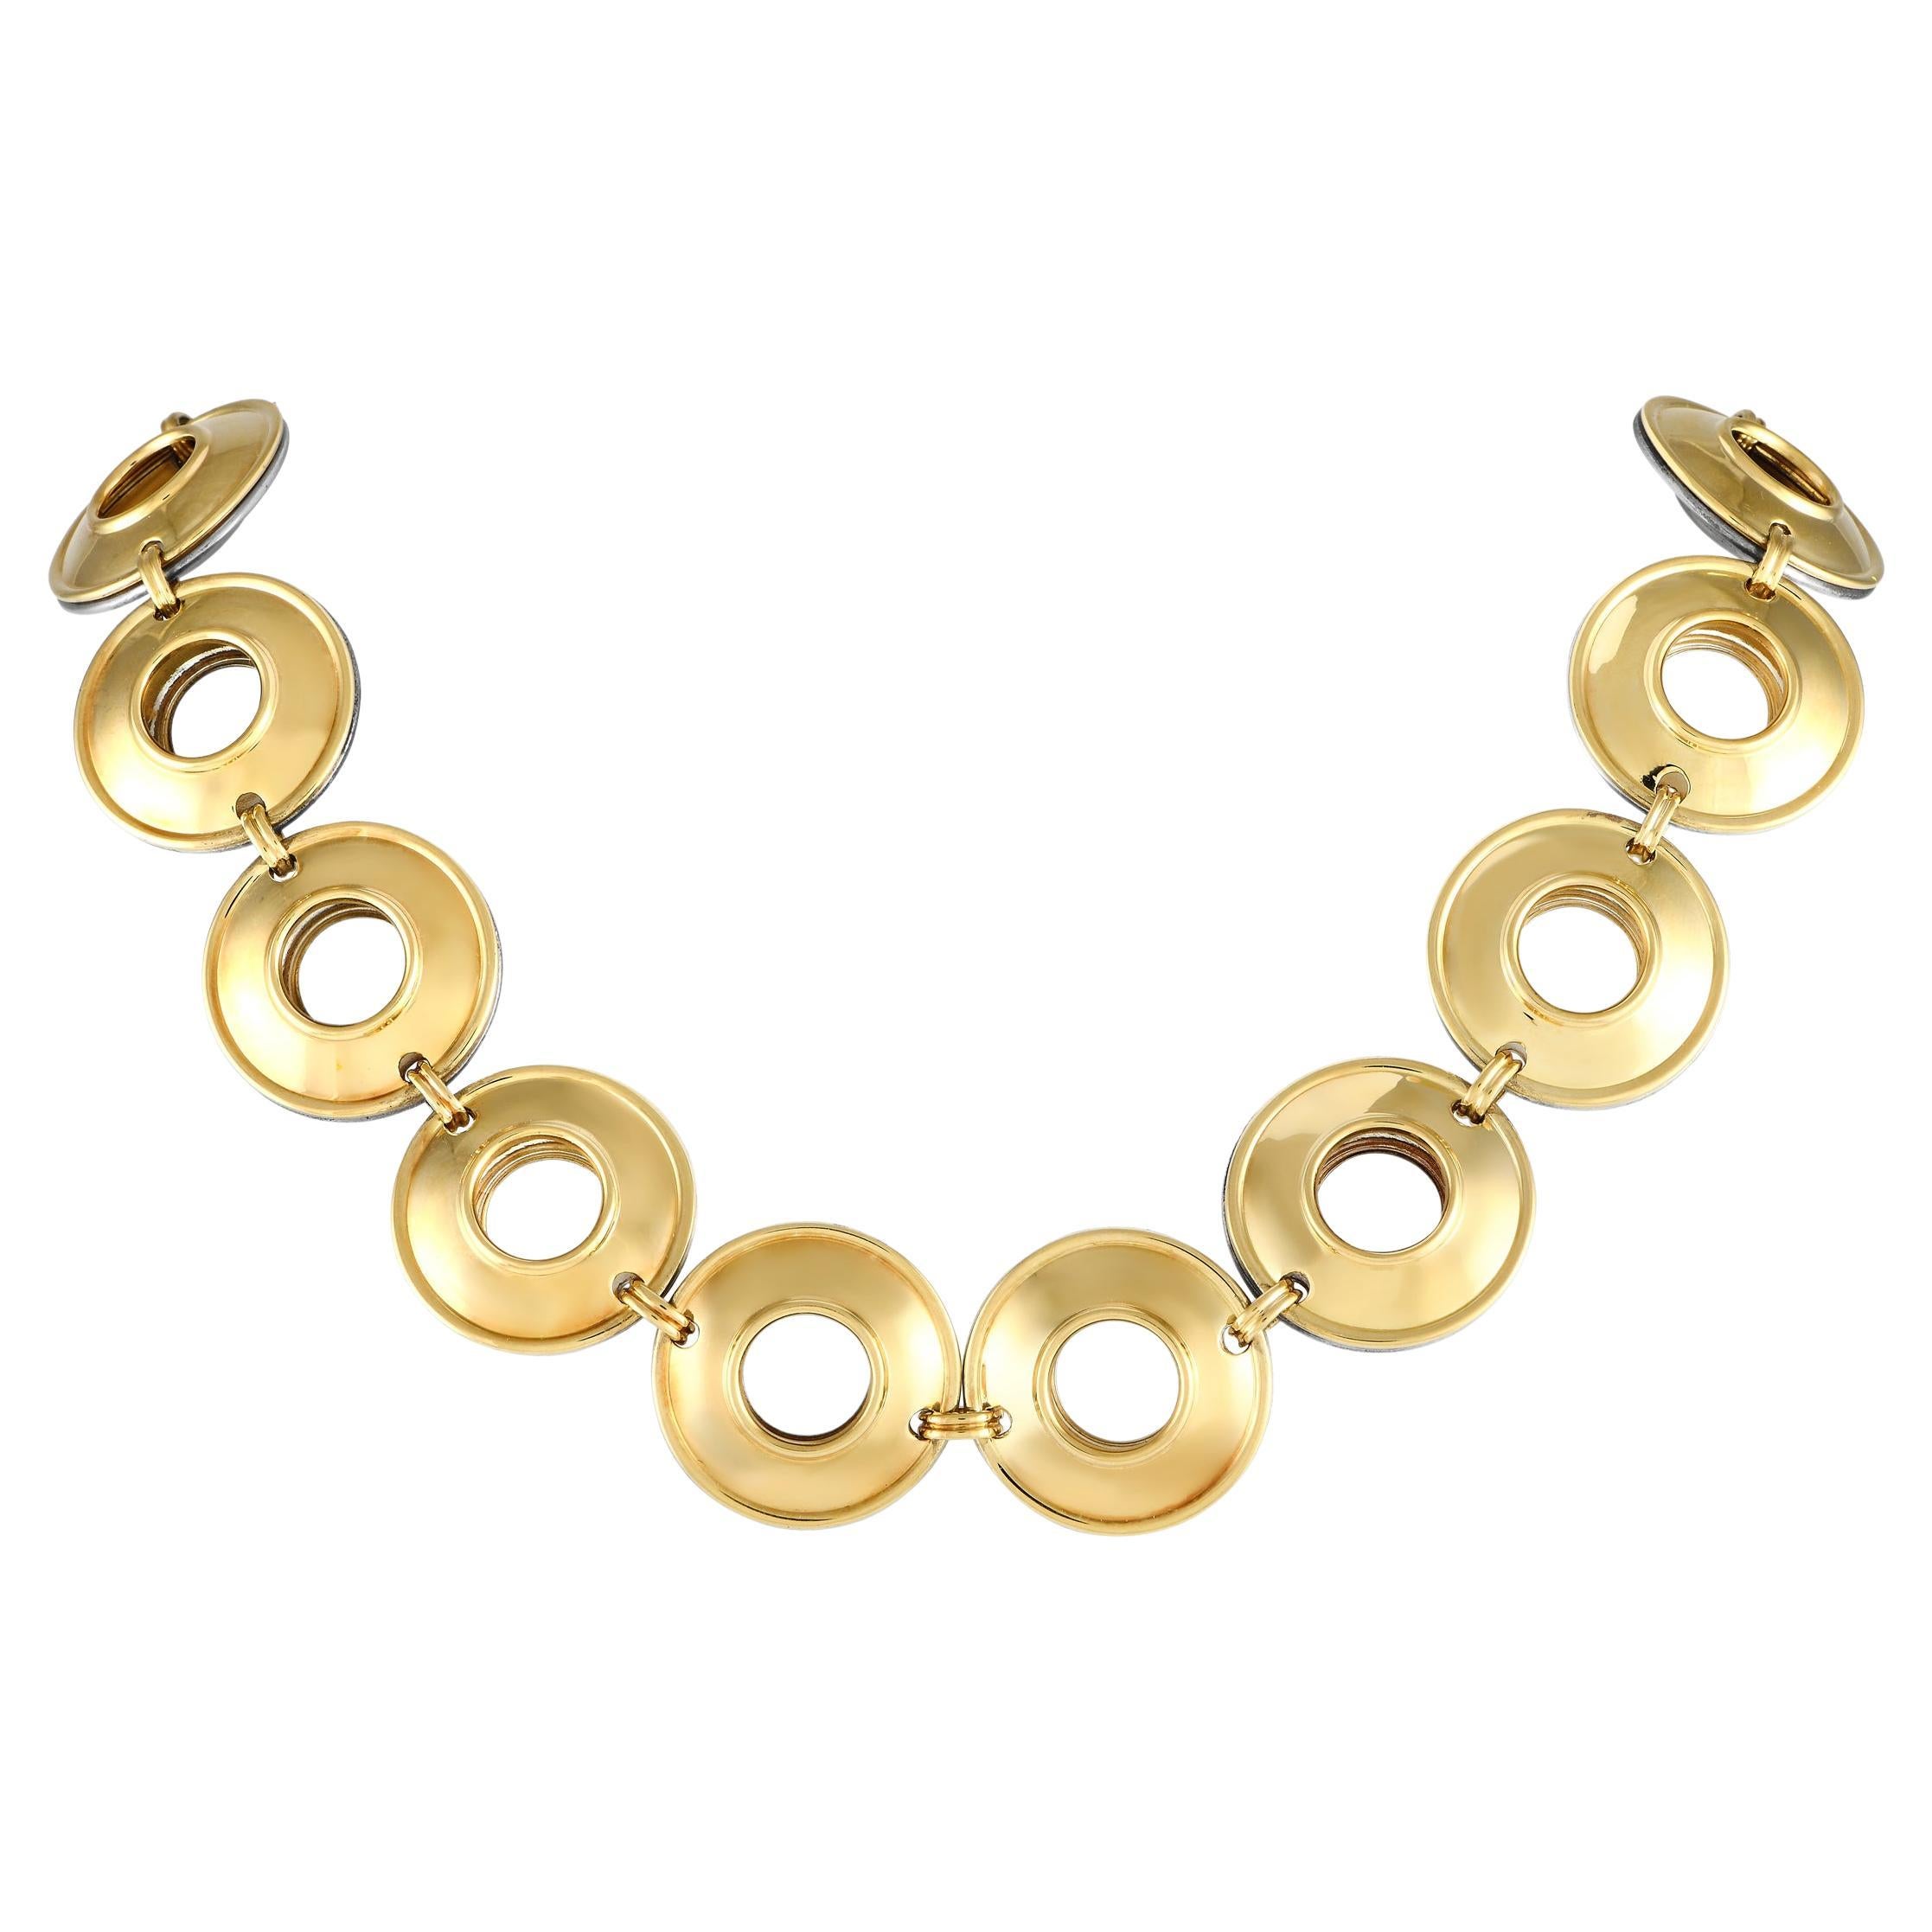 Tiffany & Co. Paloma Picasso Zweiseitige Halskette aus 18 Karat Gelbgold und Silber